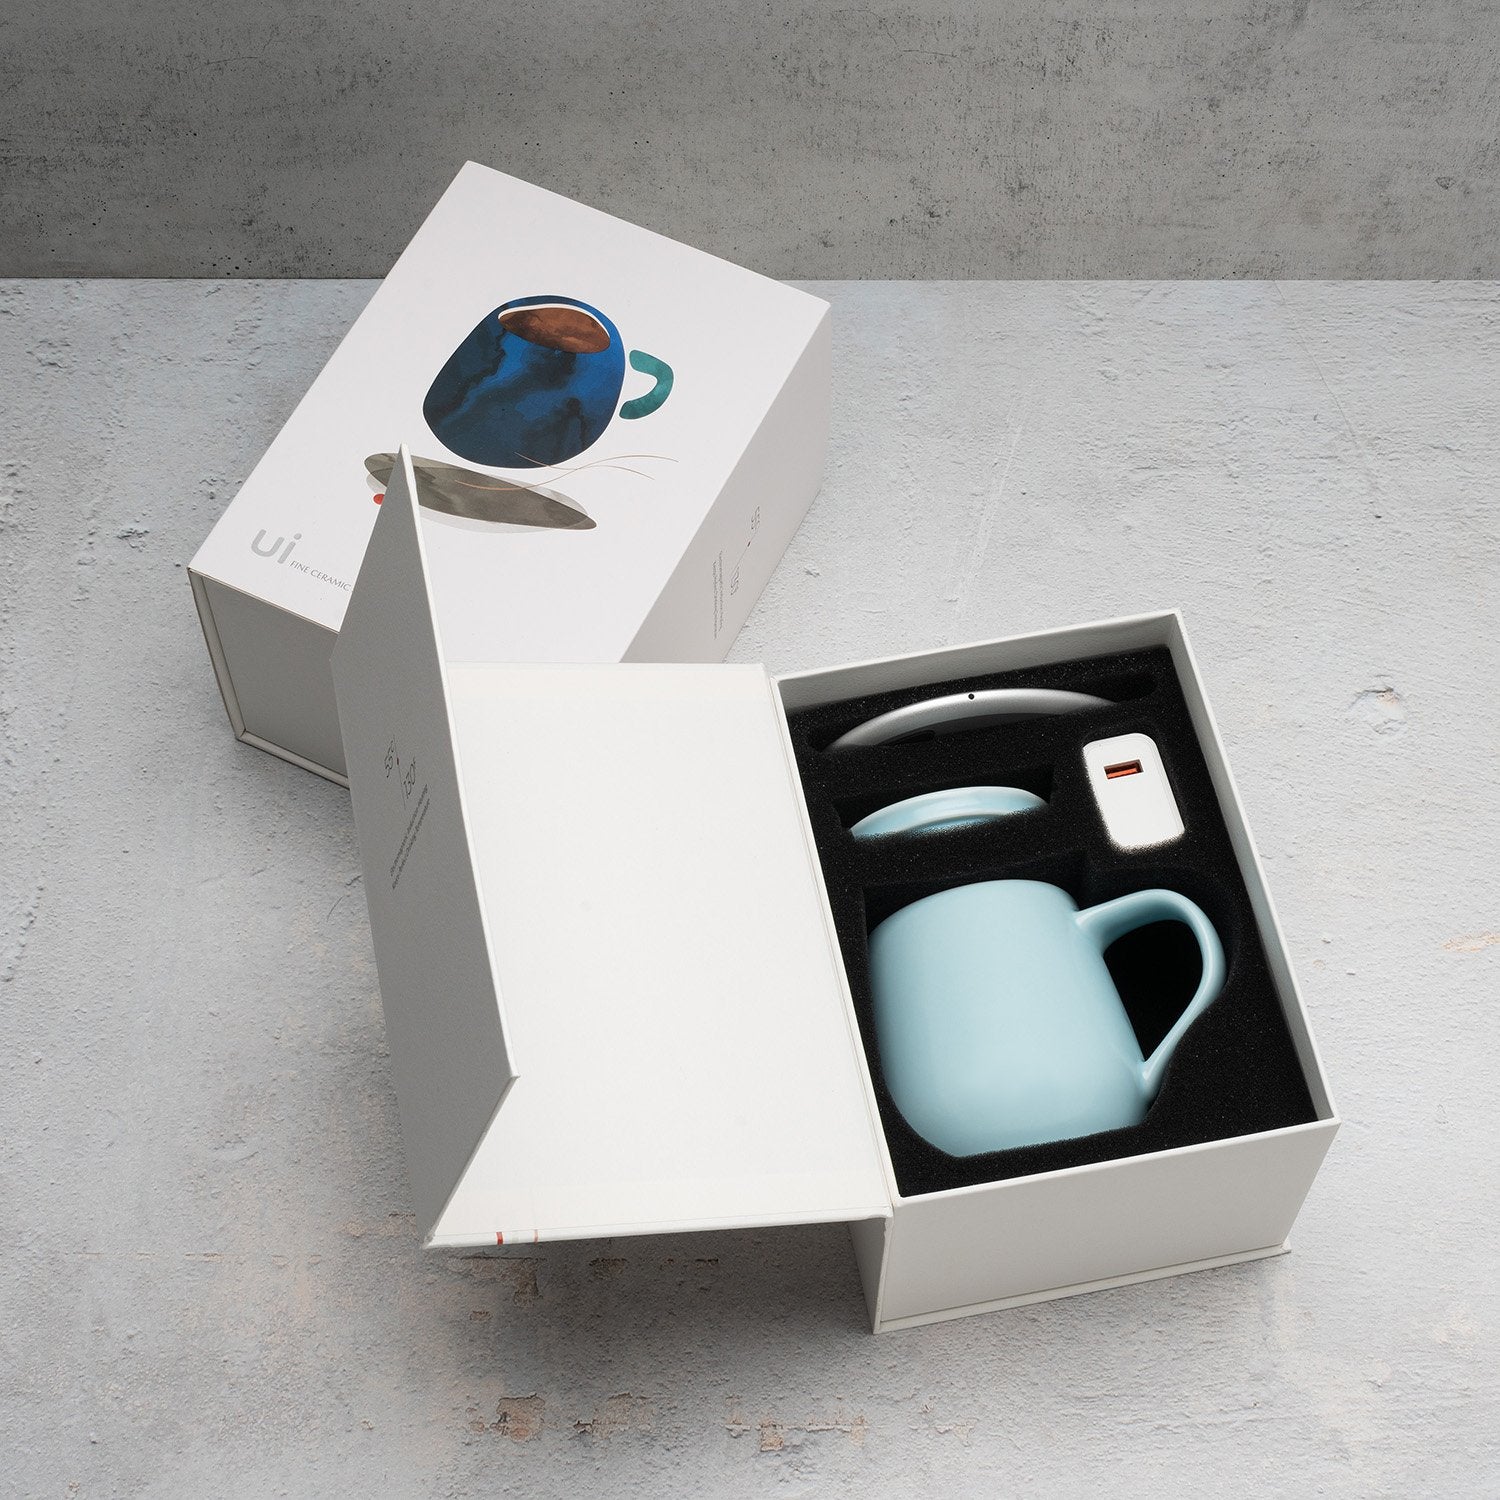 Light blue mug in packaging